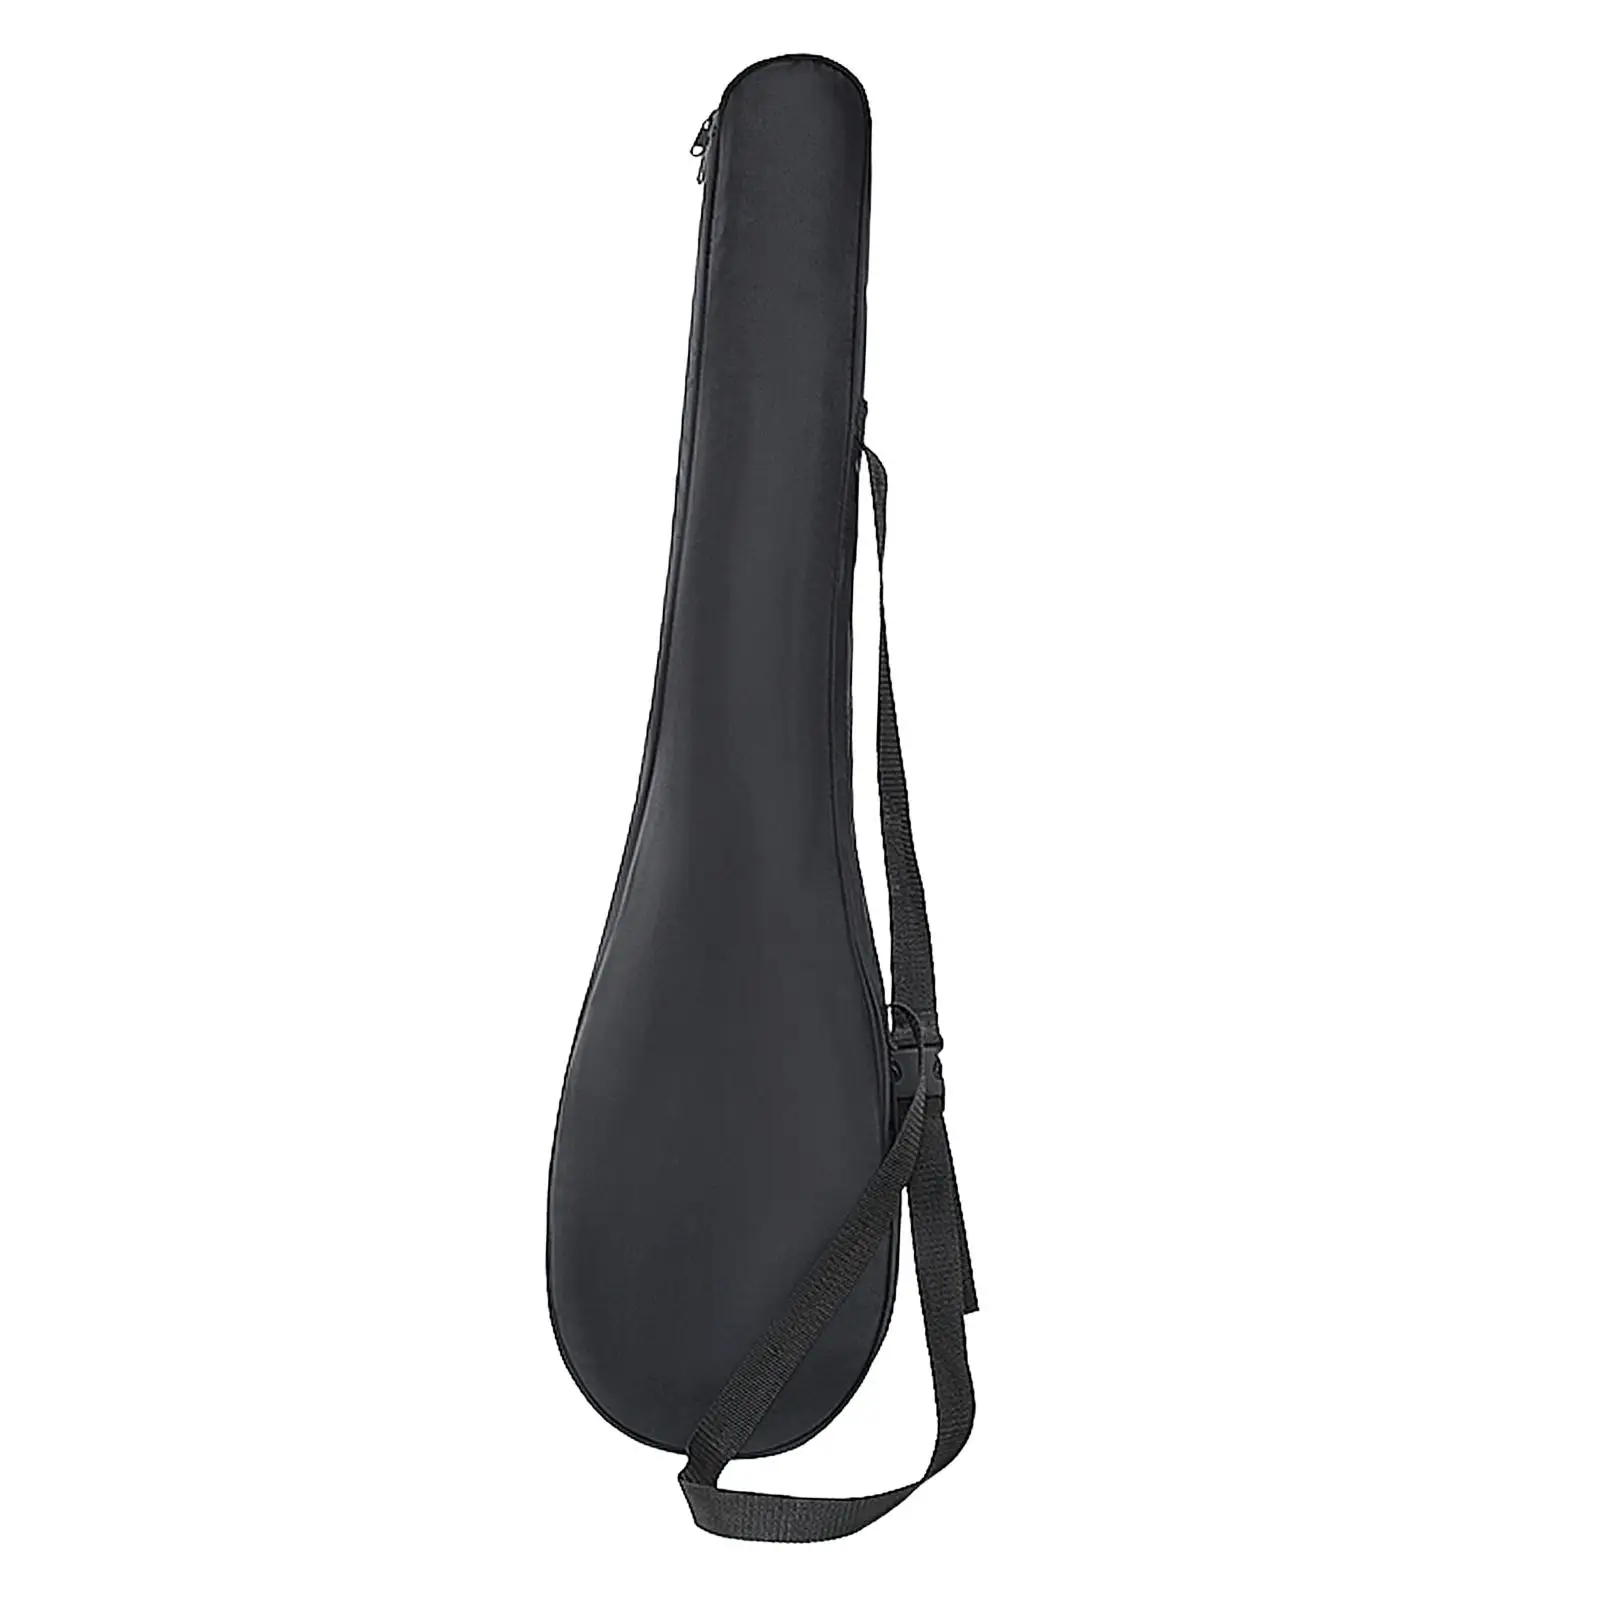 Kayak Paddle Bag Kayaking Paddle Transportation Bag Lightweight Adjustable Shoulder Strap Portable Oxford Cloth Paddle Carrier